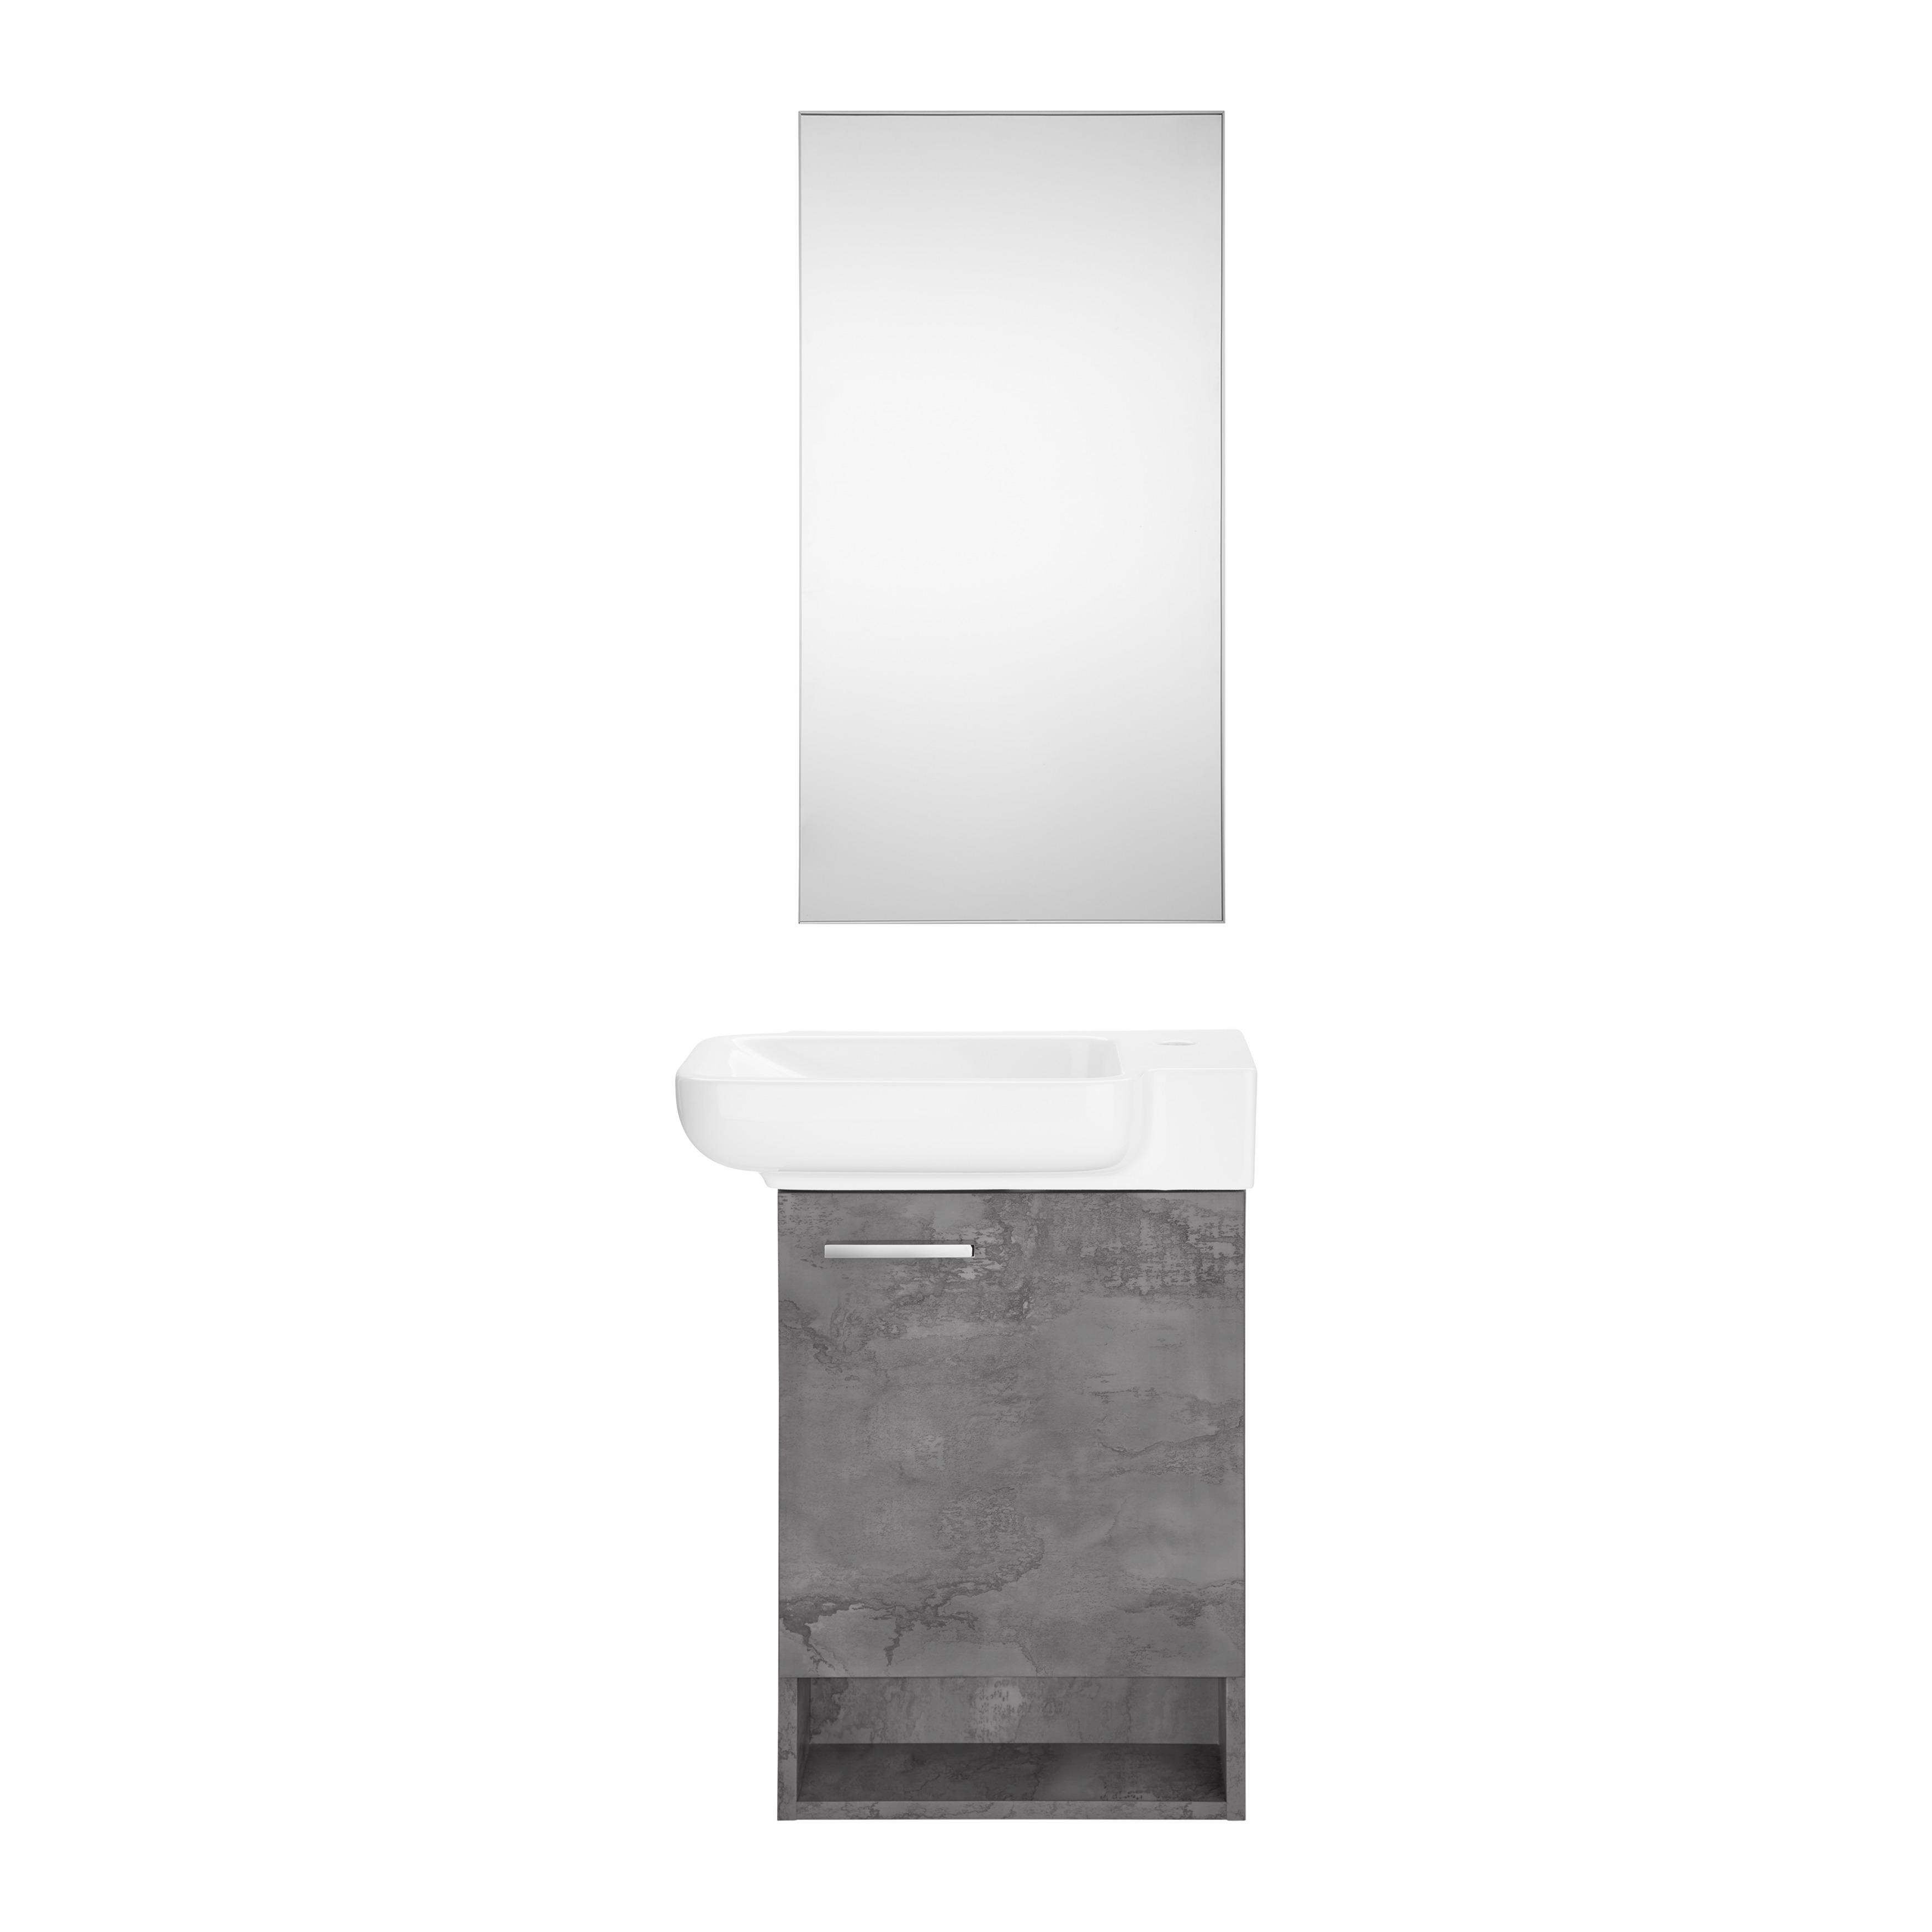 Koupelna Begonya - bílá/šedá, Moderní, dřevo/keramika (55/75/33cm)